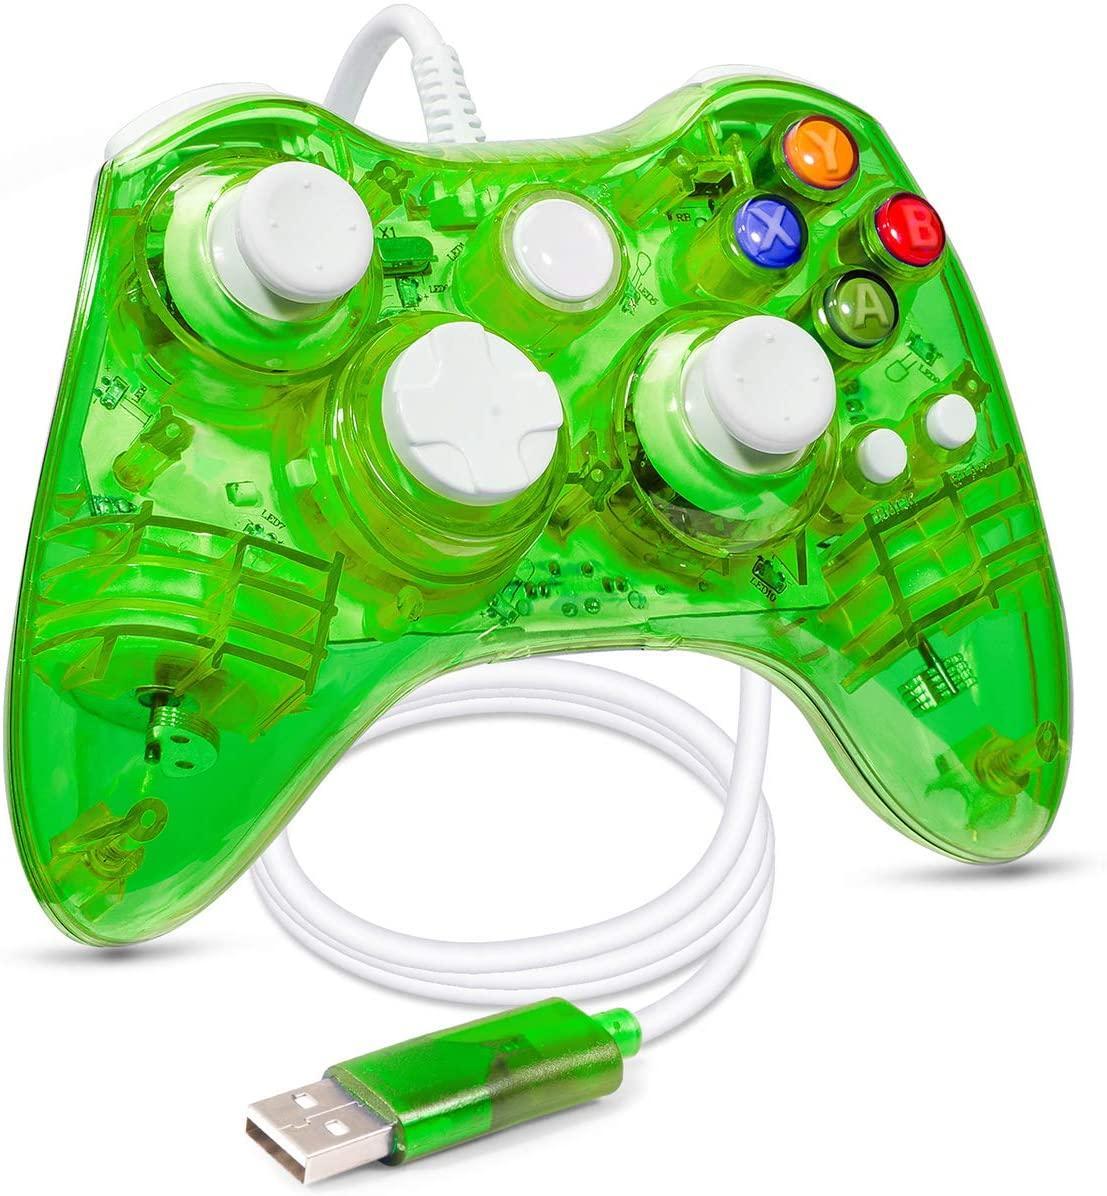 Spillkontroller kompatibel med Xbox 360 - grønn - Elkjøp